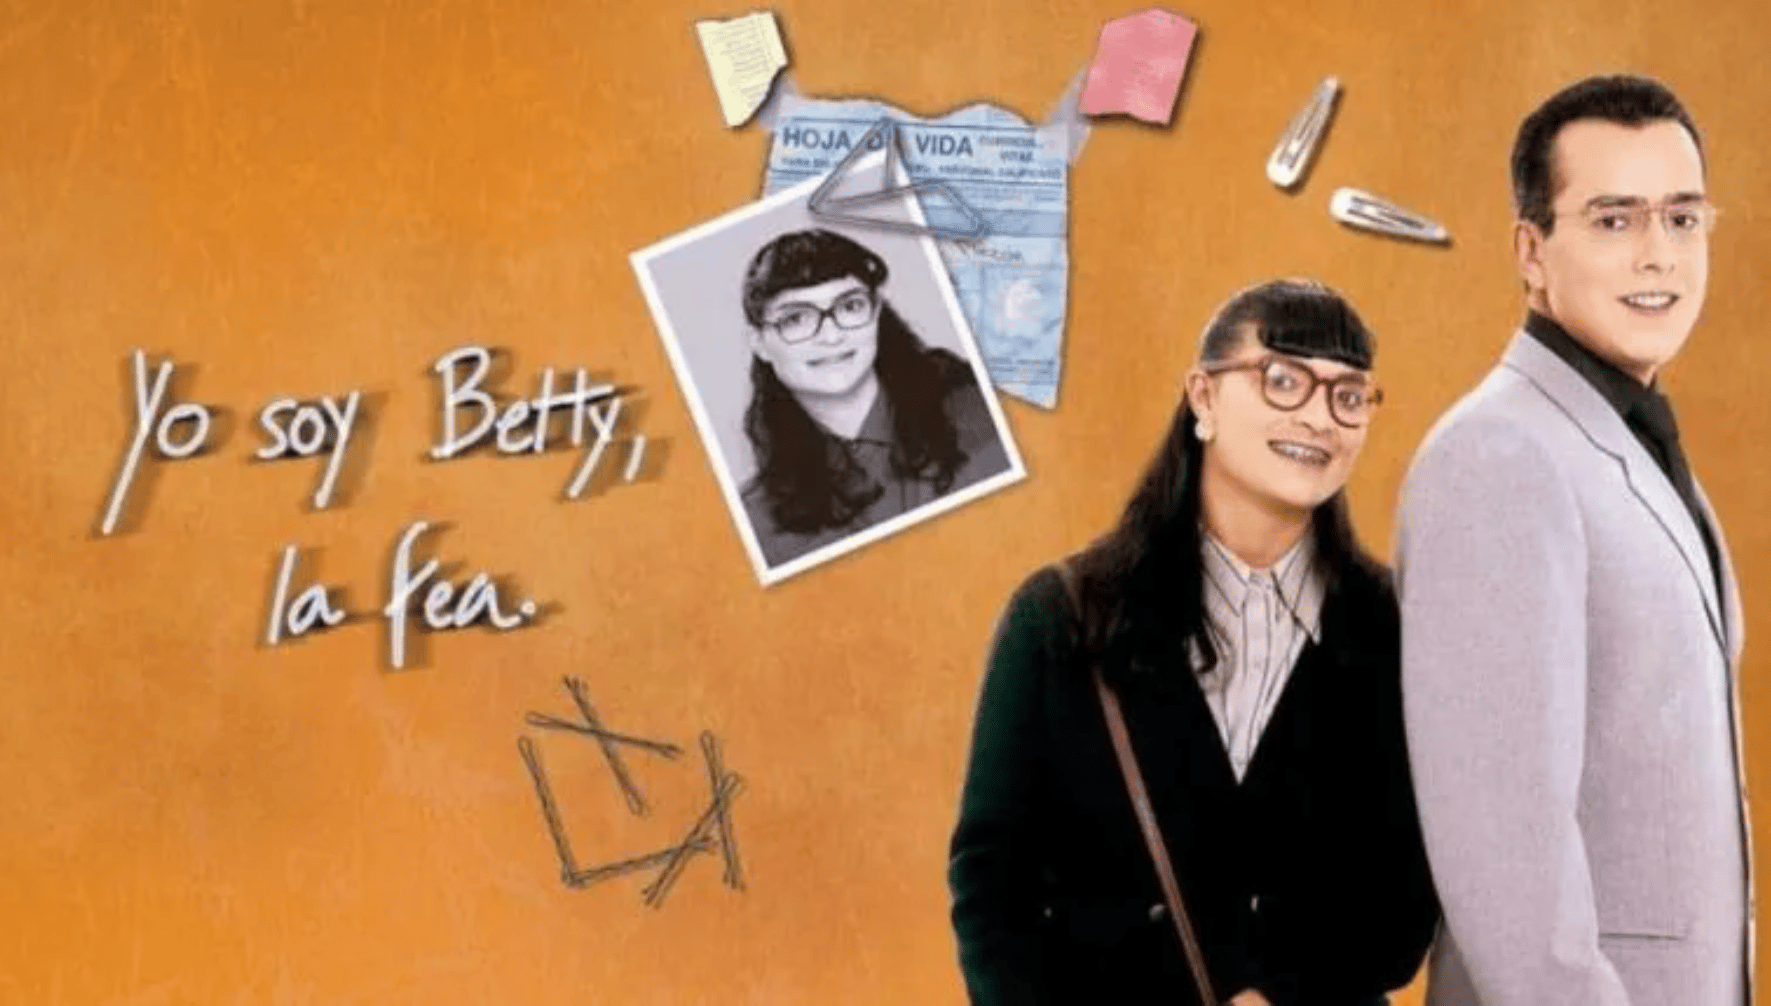 “La mala de la novela es Betty (la fea)”: la confesión de la actriz que dio vida a Marcela Valencia